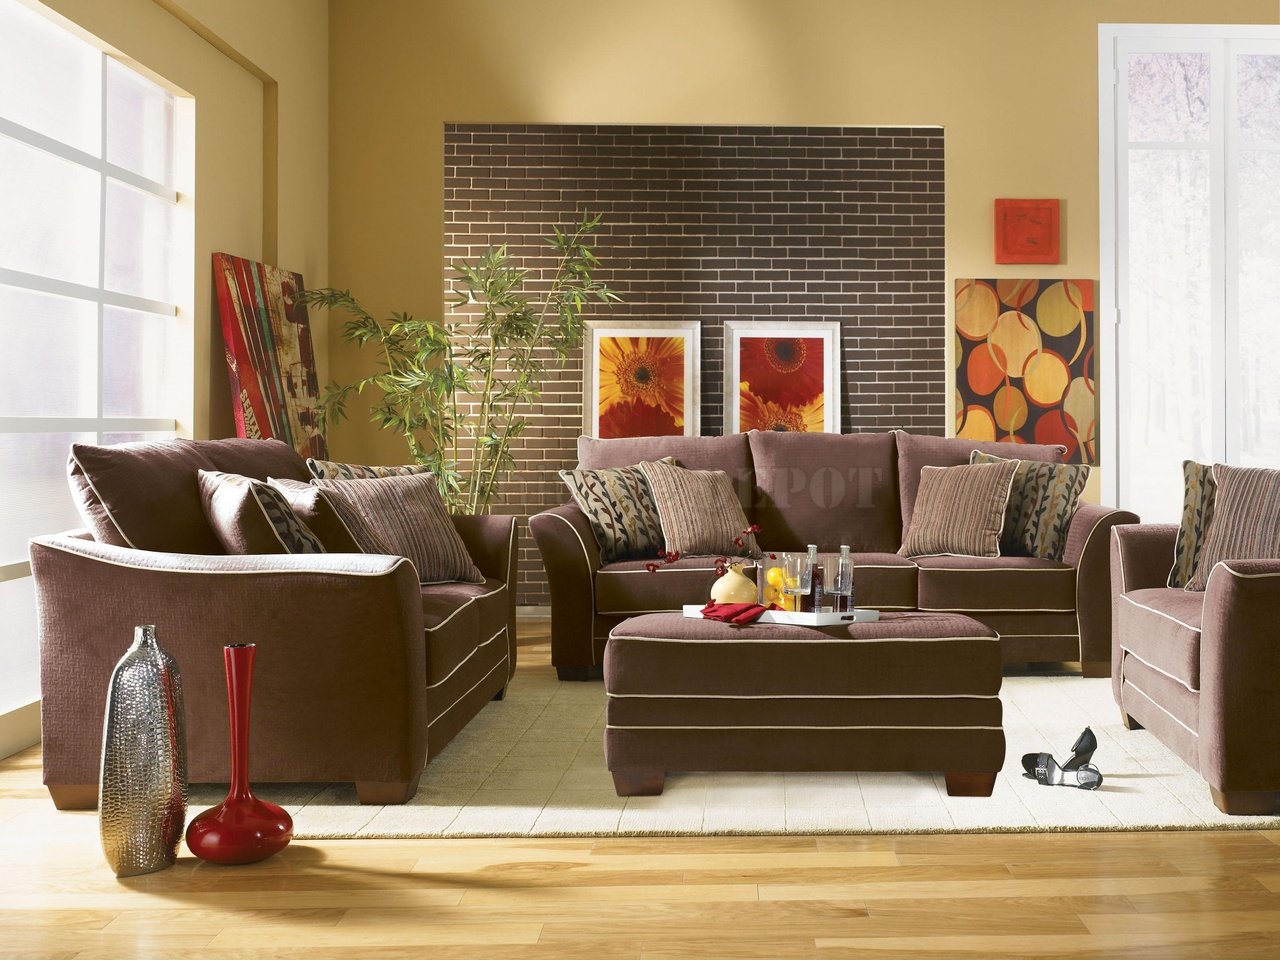 Interior Design Ideas, Interior Designs, Home Design Ideas: Living room furniture sofas design 